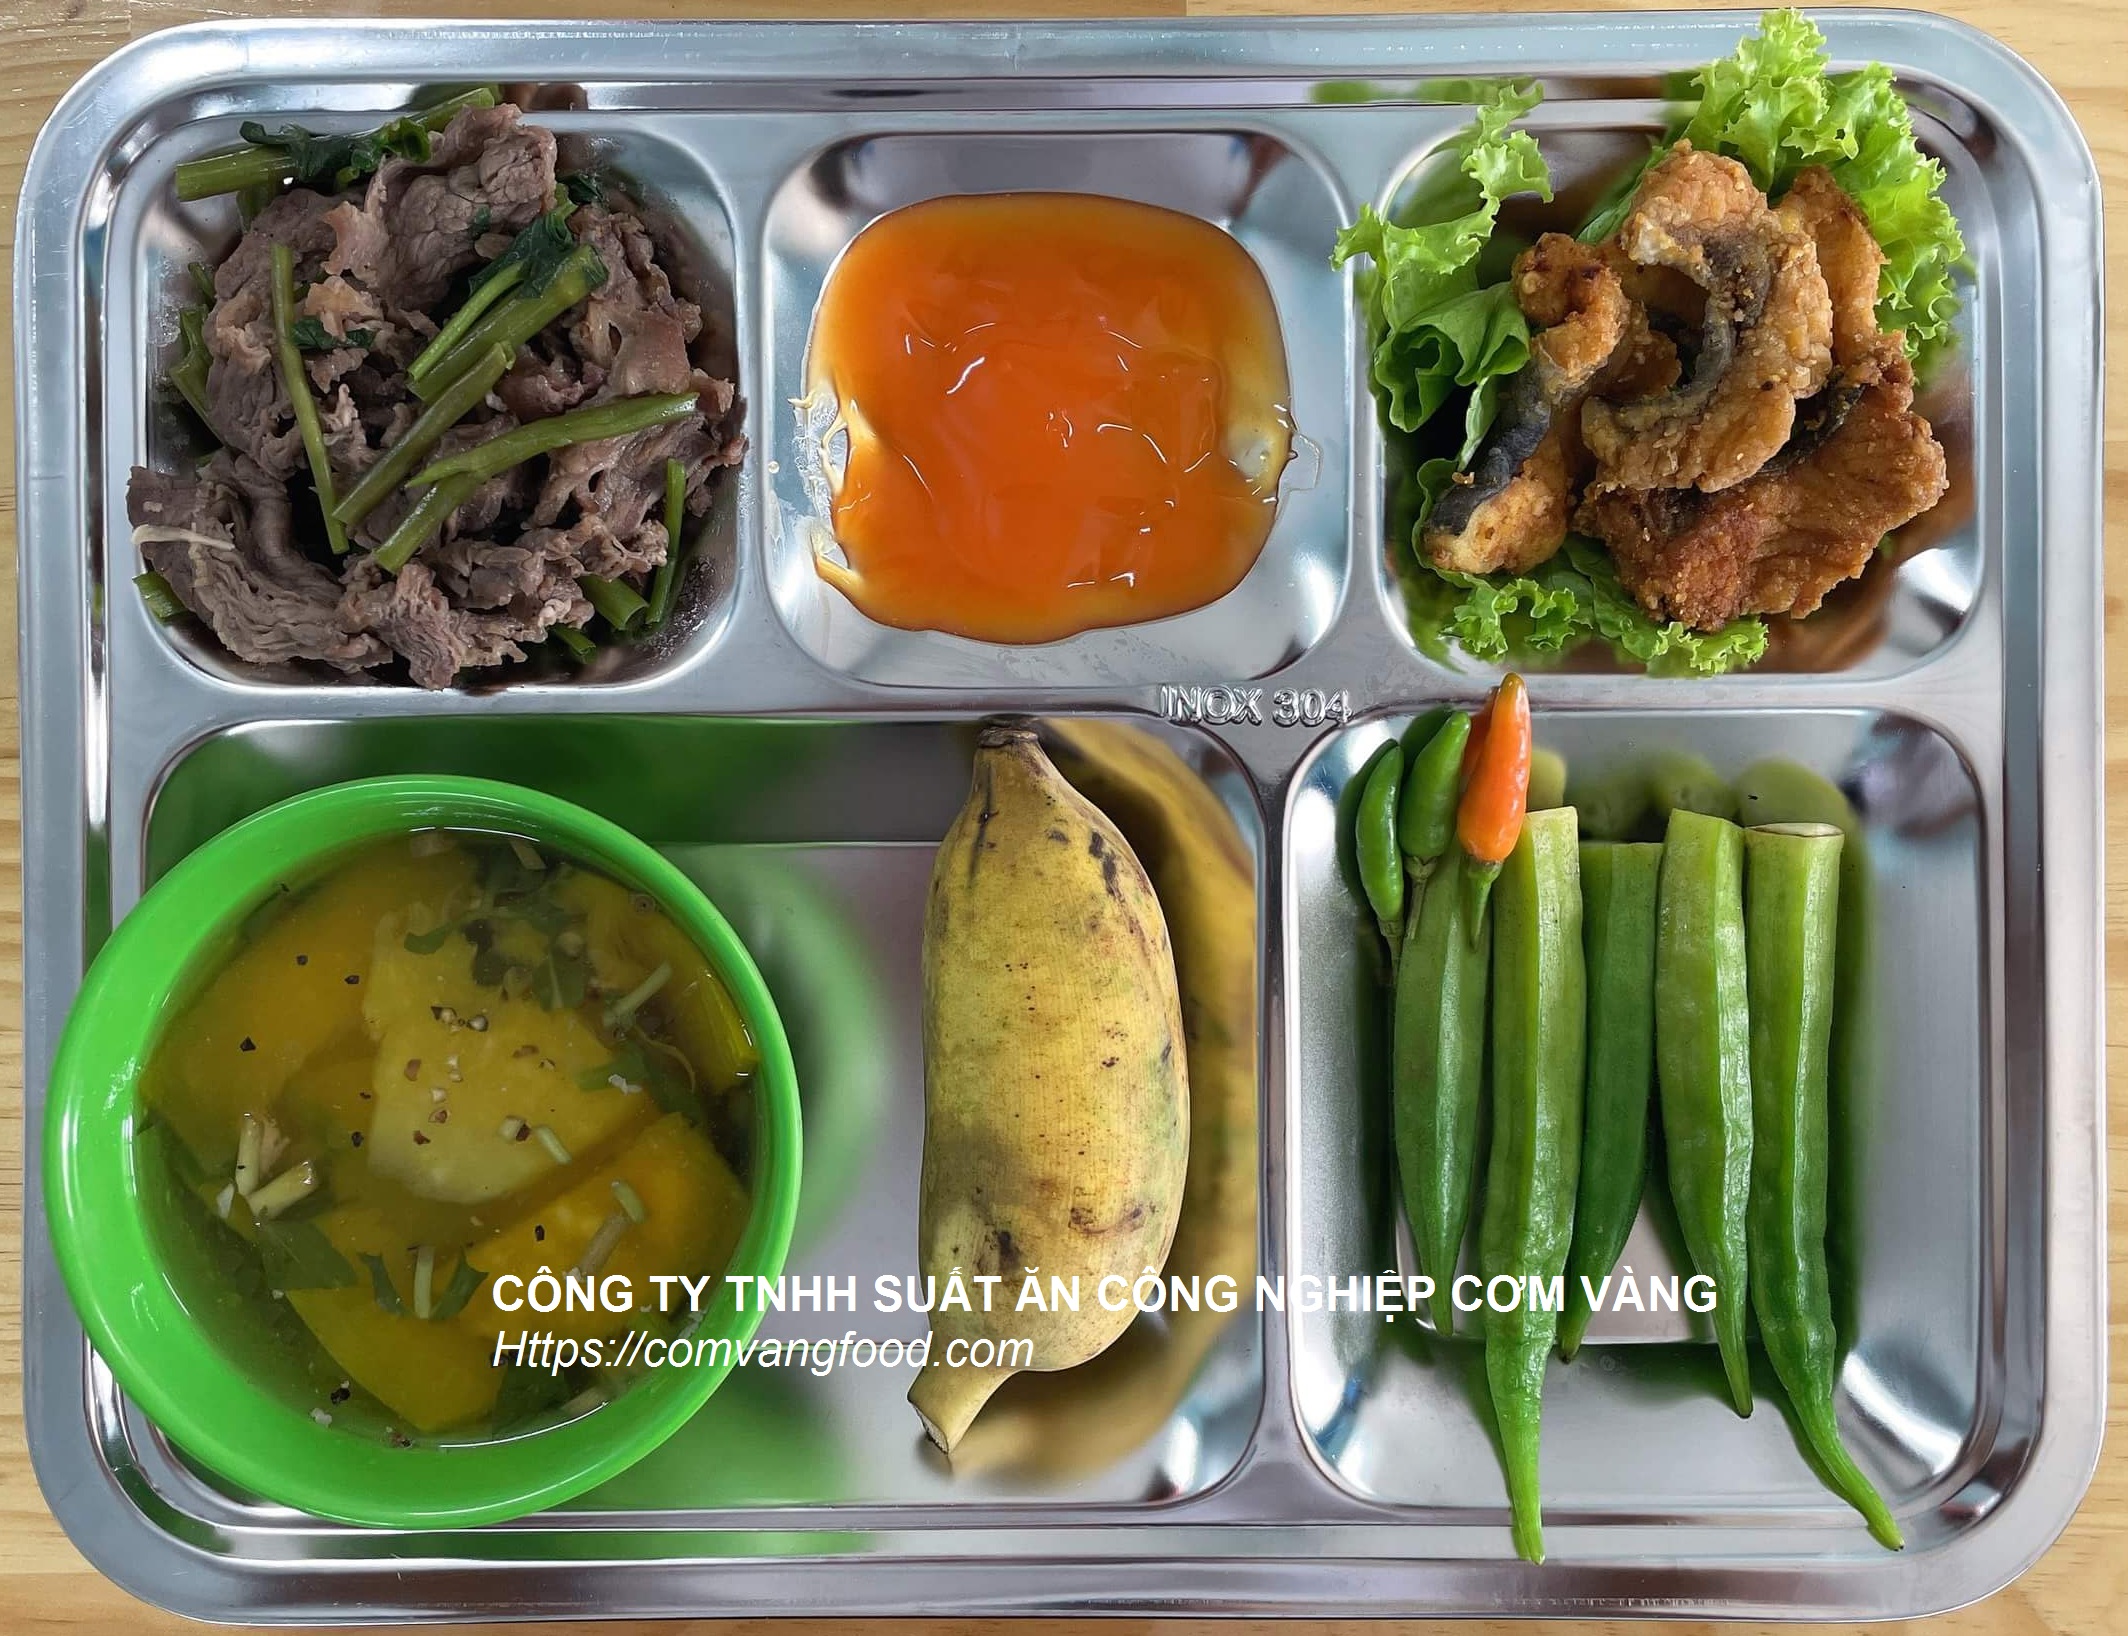 Suất ăn CN 25K ở KCN Biên Hòa 2